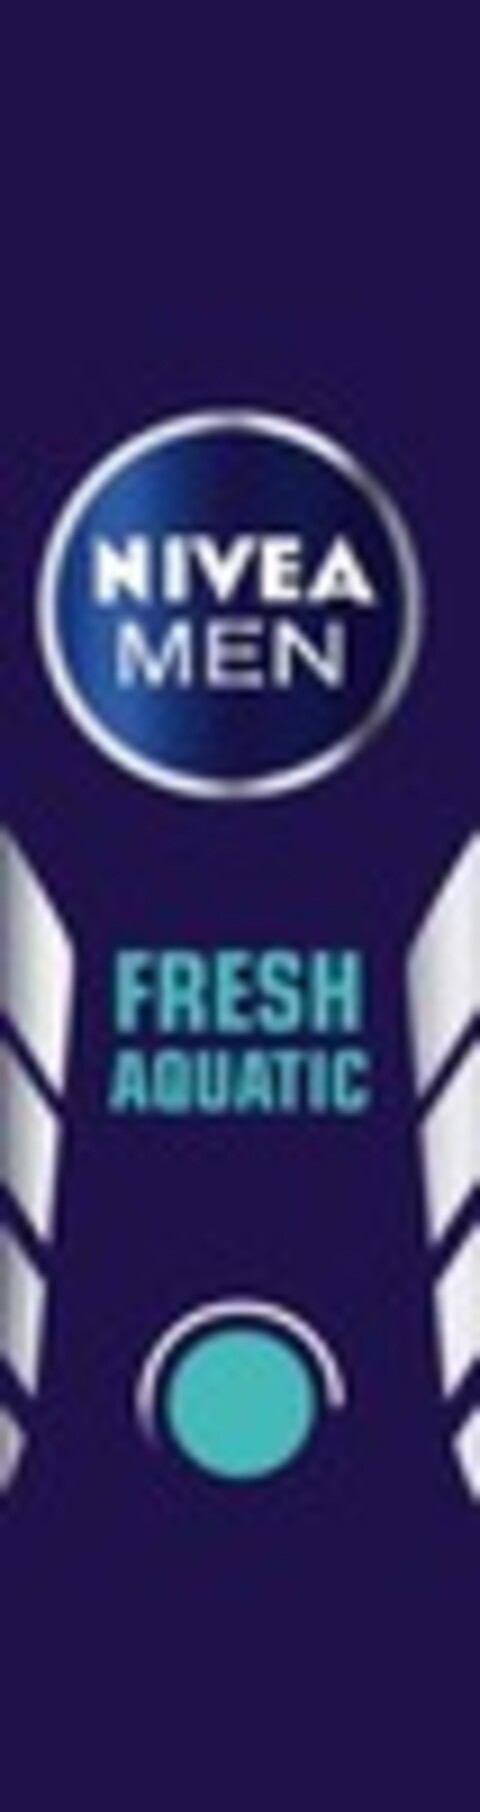 NIVEA MEN FRESH AQUATIC Logo (WIPO, 09.03.2020)